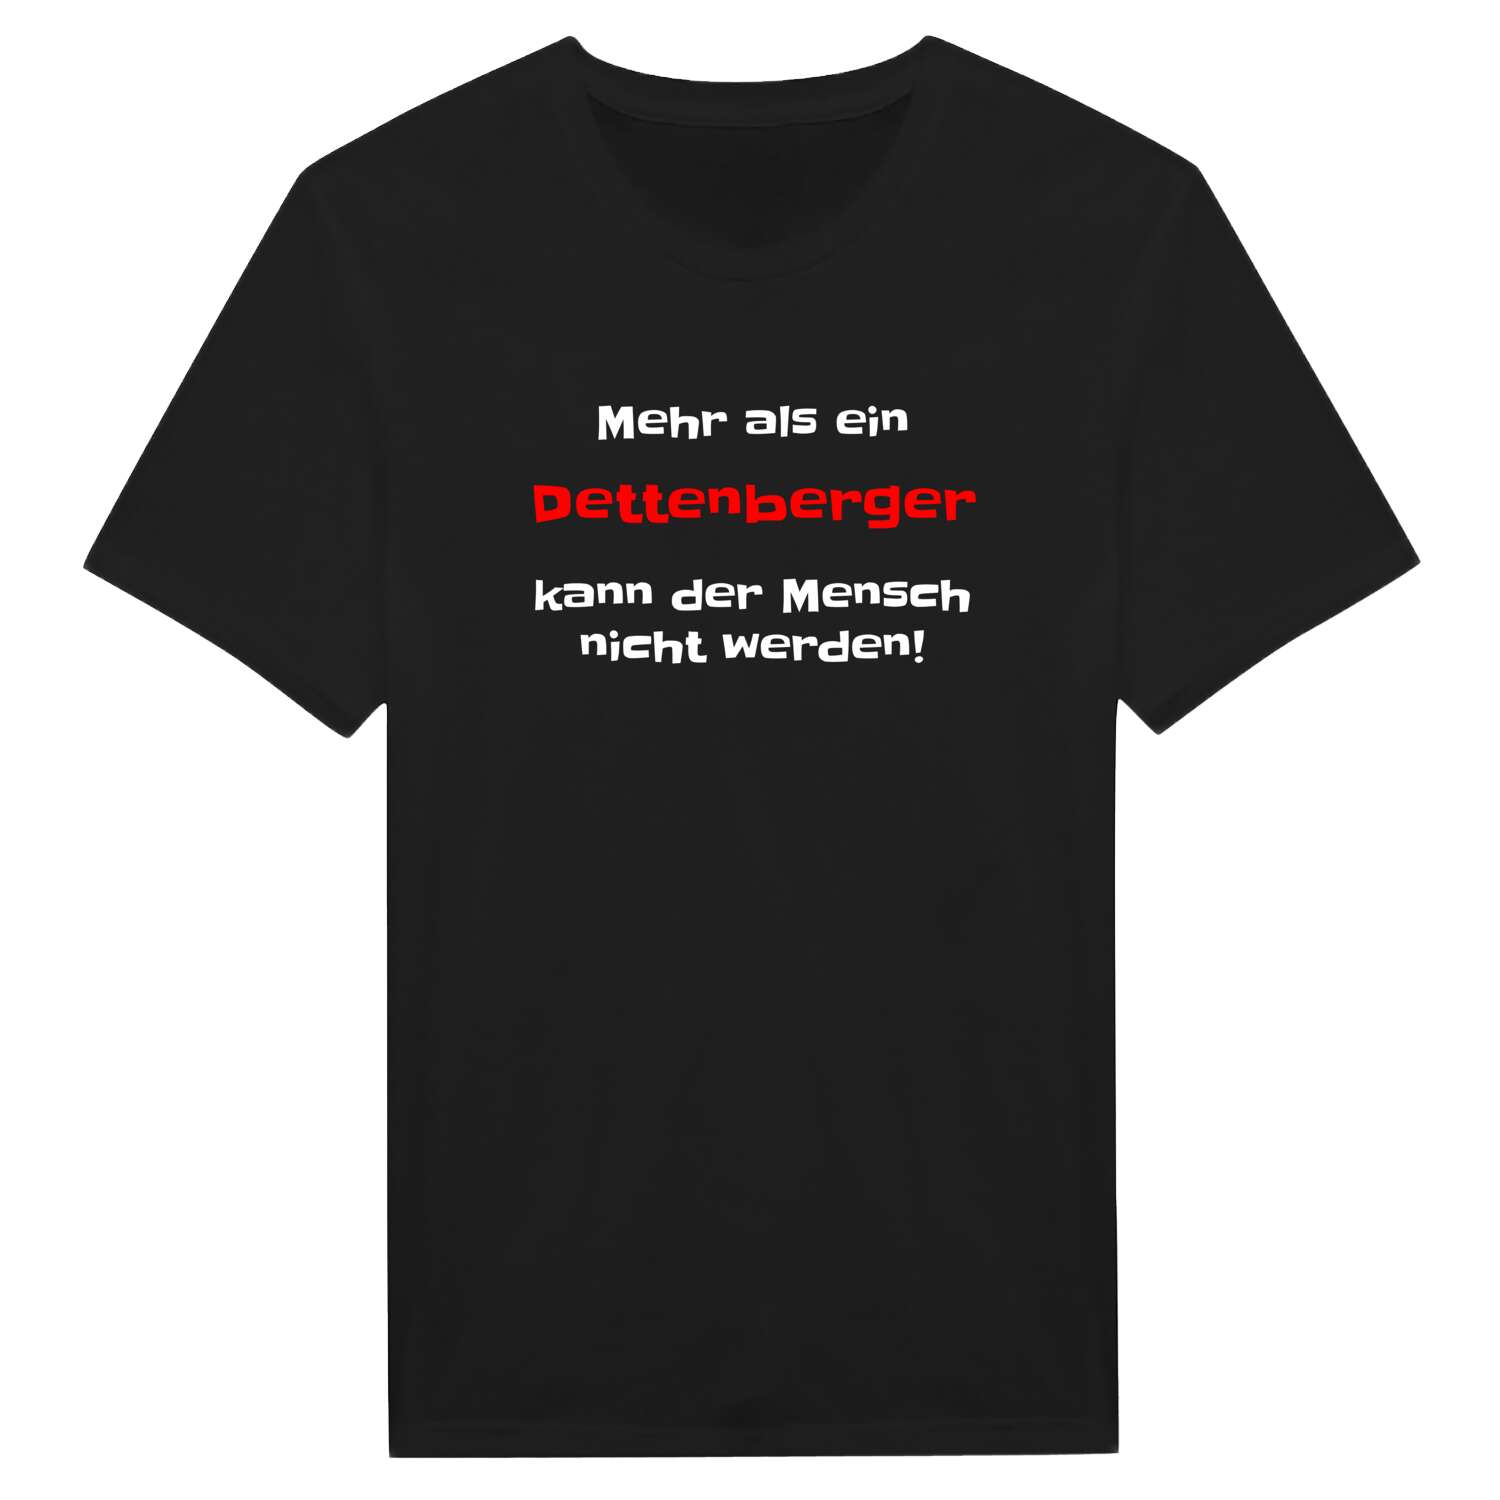 Dettenberg T-Shirt »Mehr als ein«